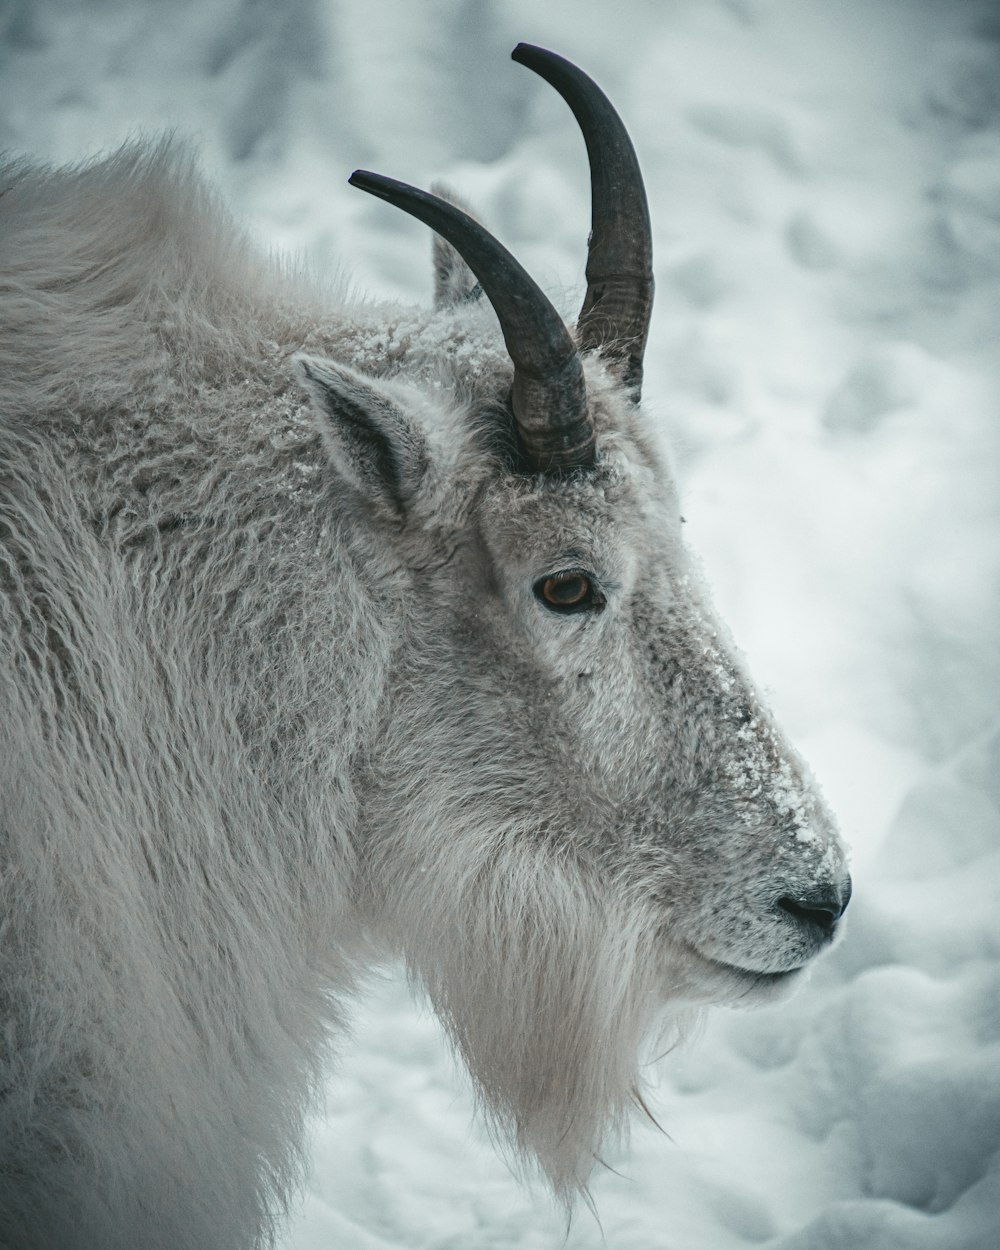 weißes und braunes Tier tagsüber auf schneebedecktem Boden